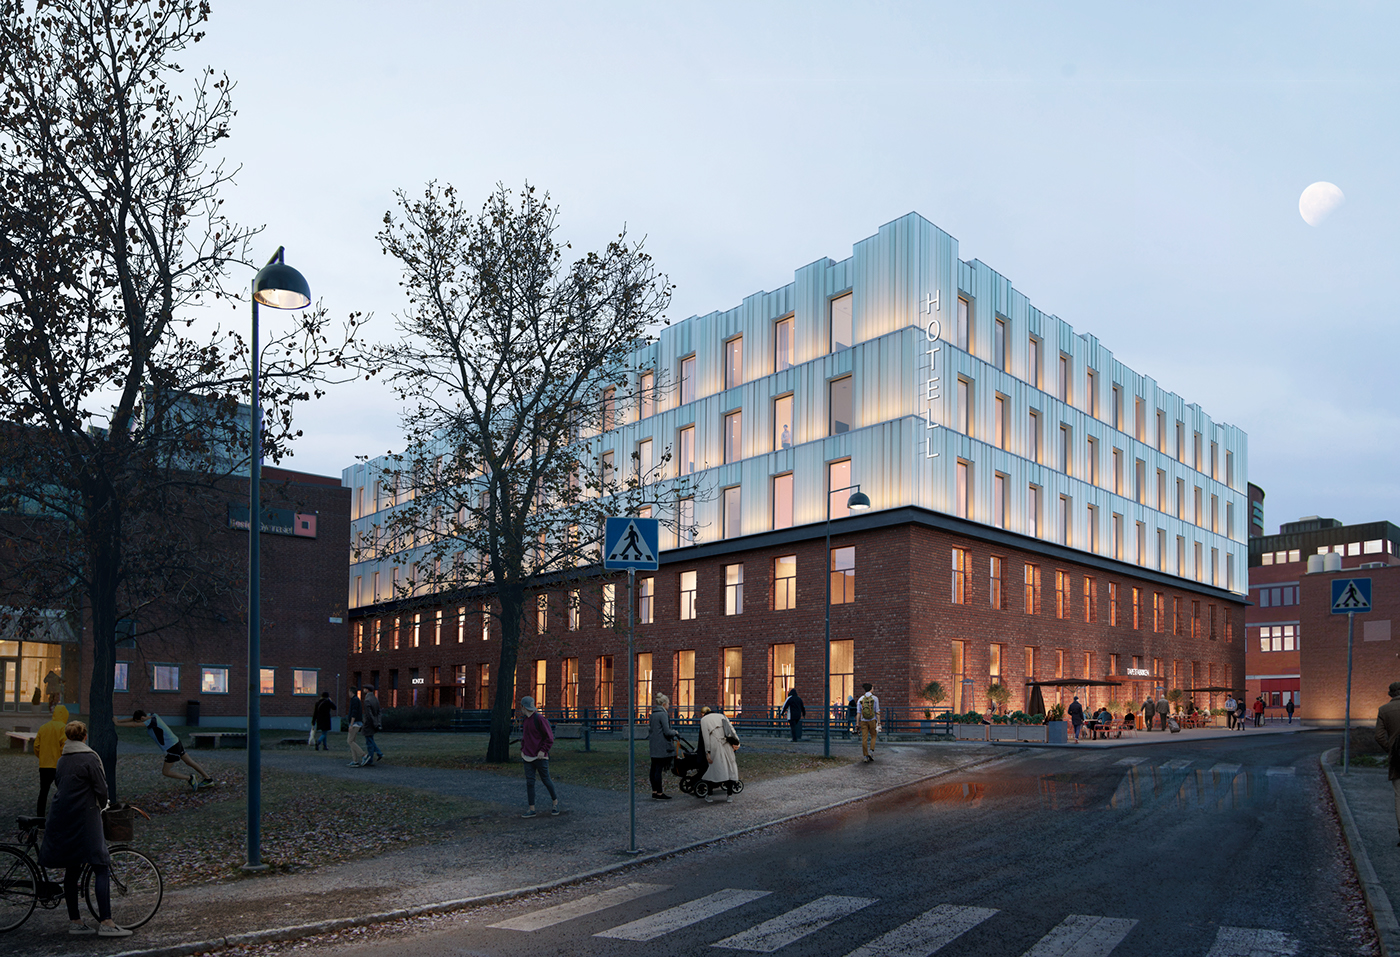 Render hotel corona renderer 3dmax design architecture Landscape Sweden Stockholm